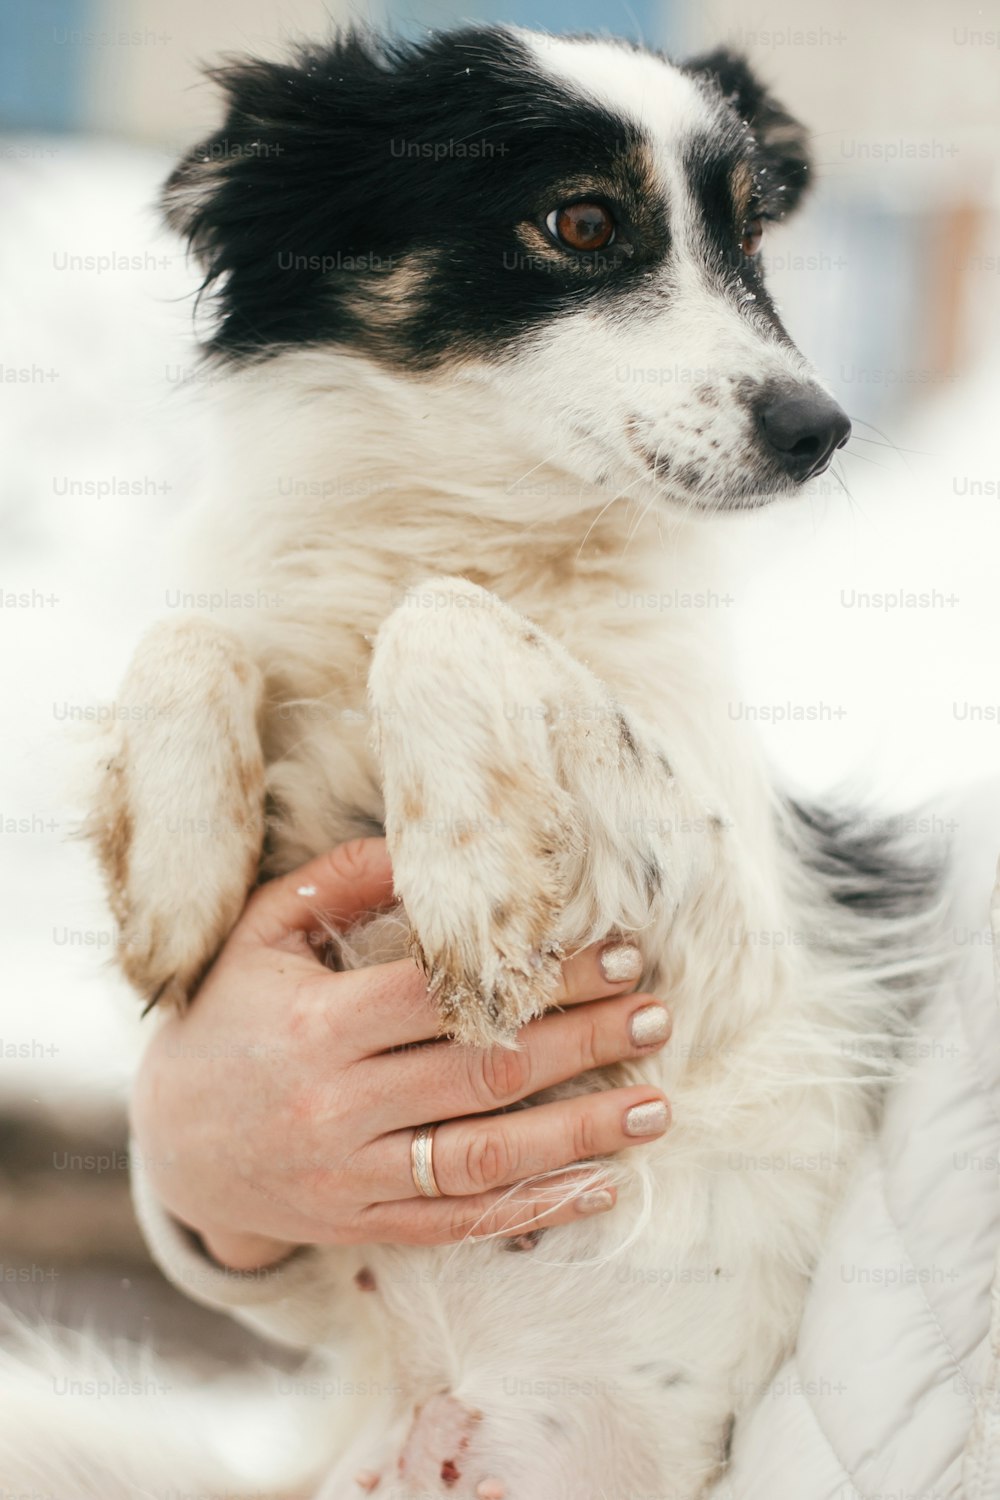 Cão assustado bonito em mãos de pessoa no parque de inverno nevado. Pessoas abraçando cachorrinho preto e branco no abrigo. Conceito de adoção. Filhote de cachorro fofo e perdido